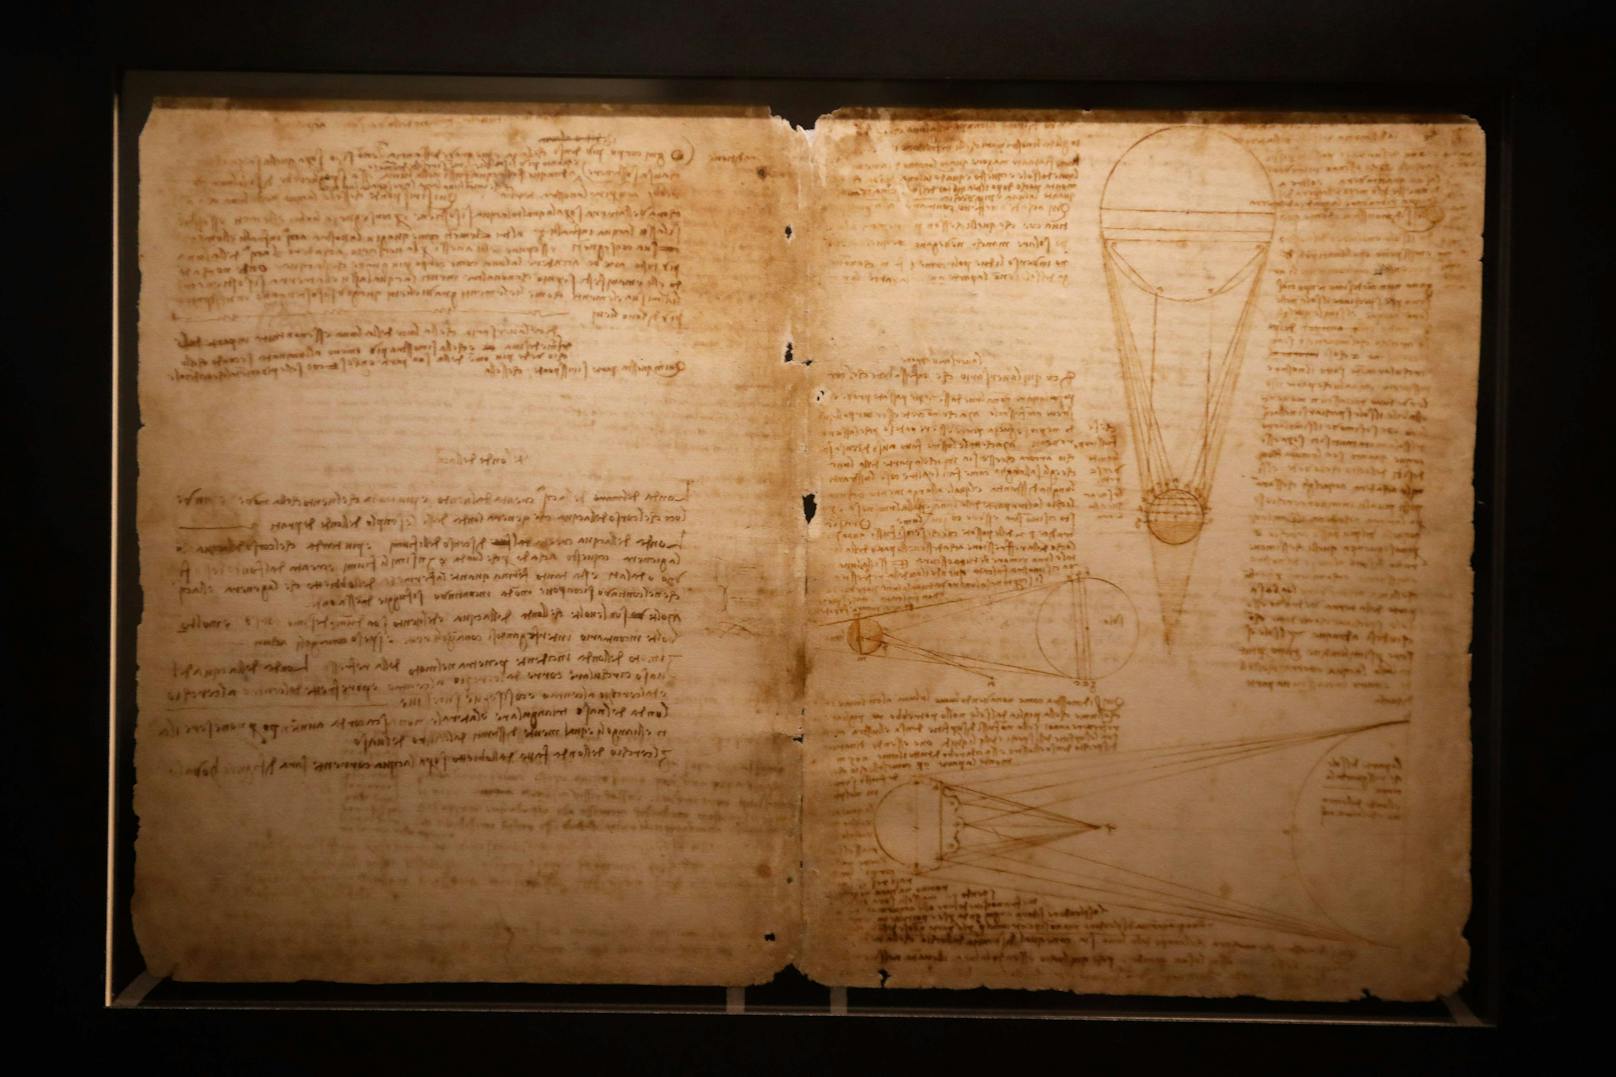 Der <strong>Codex Leicester</strong> ist eine gebundene Sammlung von Blättern mit wissenschaftlichen Schriften, Notizen, Skizzen und Zeichnungen Leonardo da Vincis